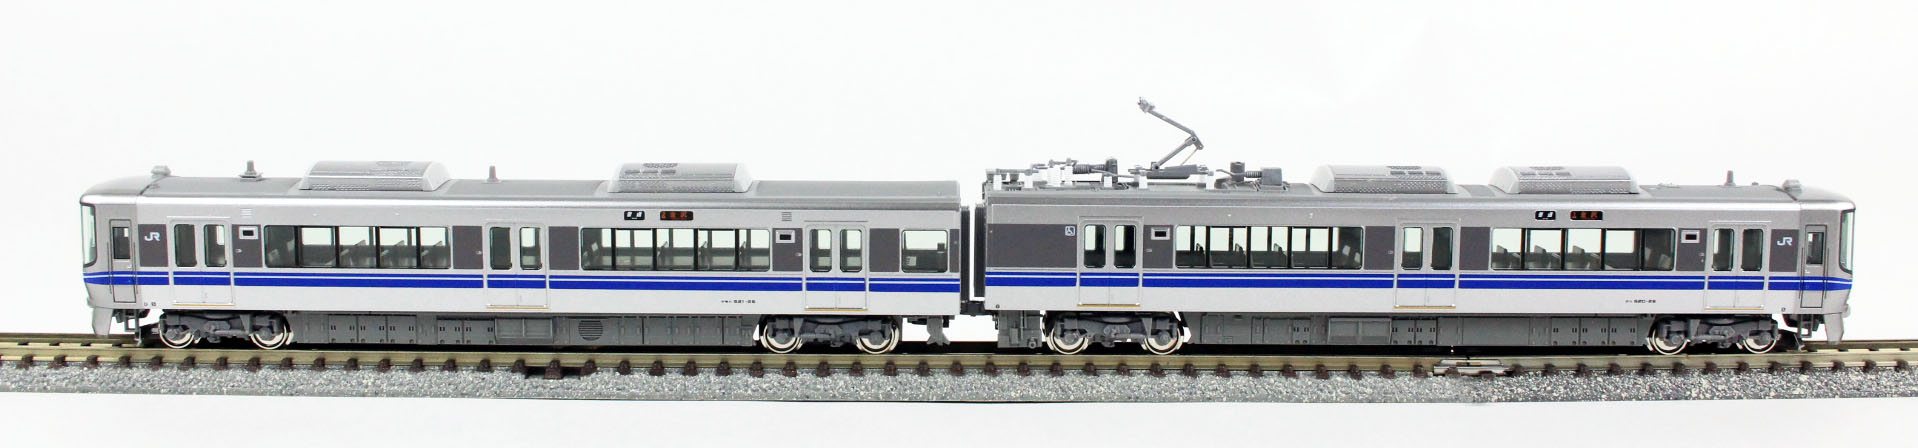 KATO 10-1395 521系 (2次車) 2両セット 鉄道模型 Nゲージ | 鉄道模型